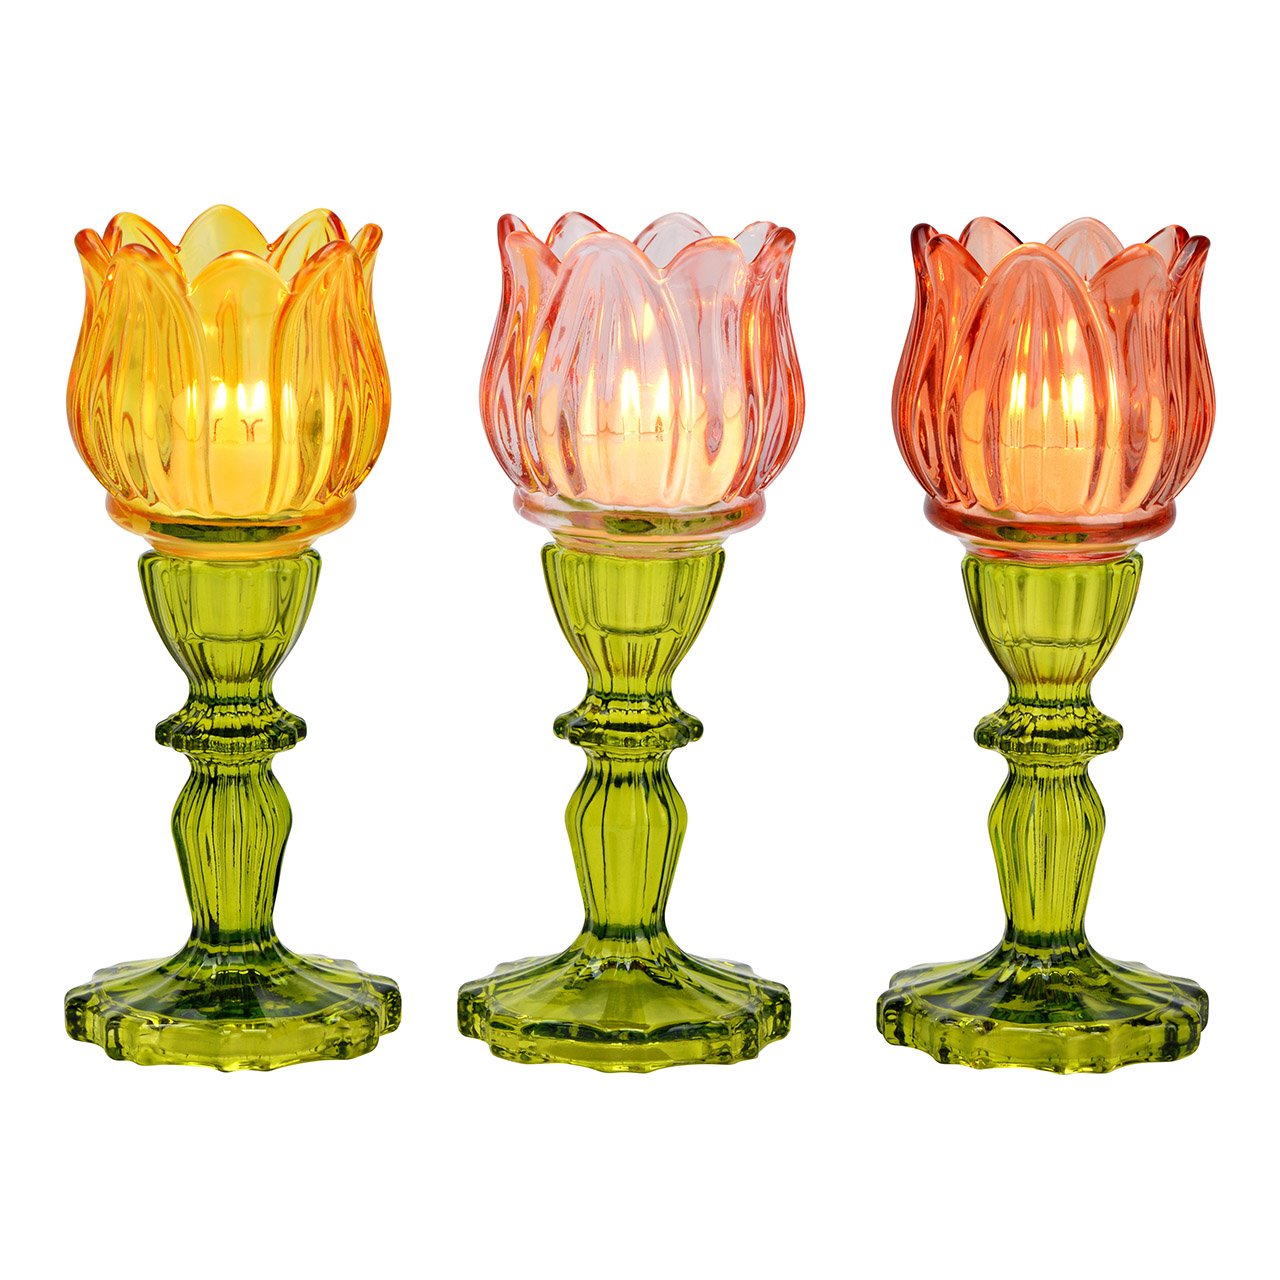 Windlicht Teelichthalter Tulpe aus Glas 3-fach, Gelb/Pink/Rot/Grün (B/H/T) 7x18x7cm